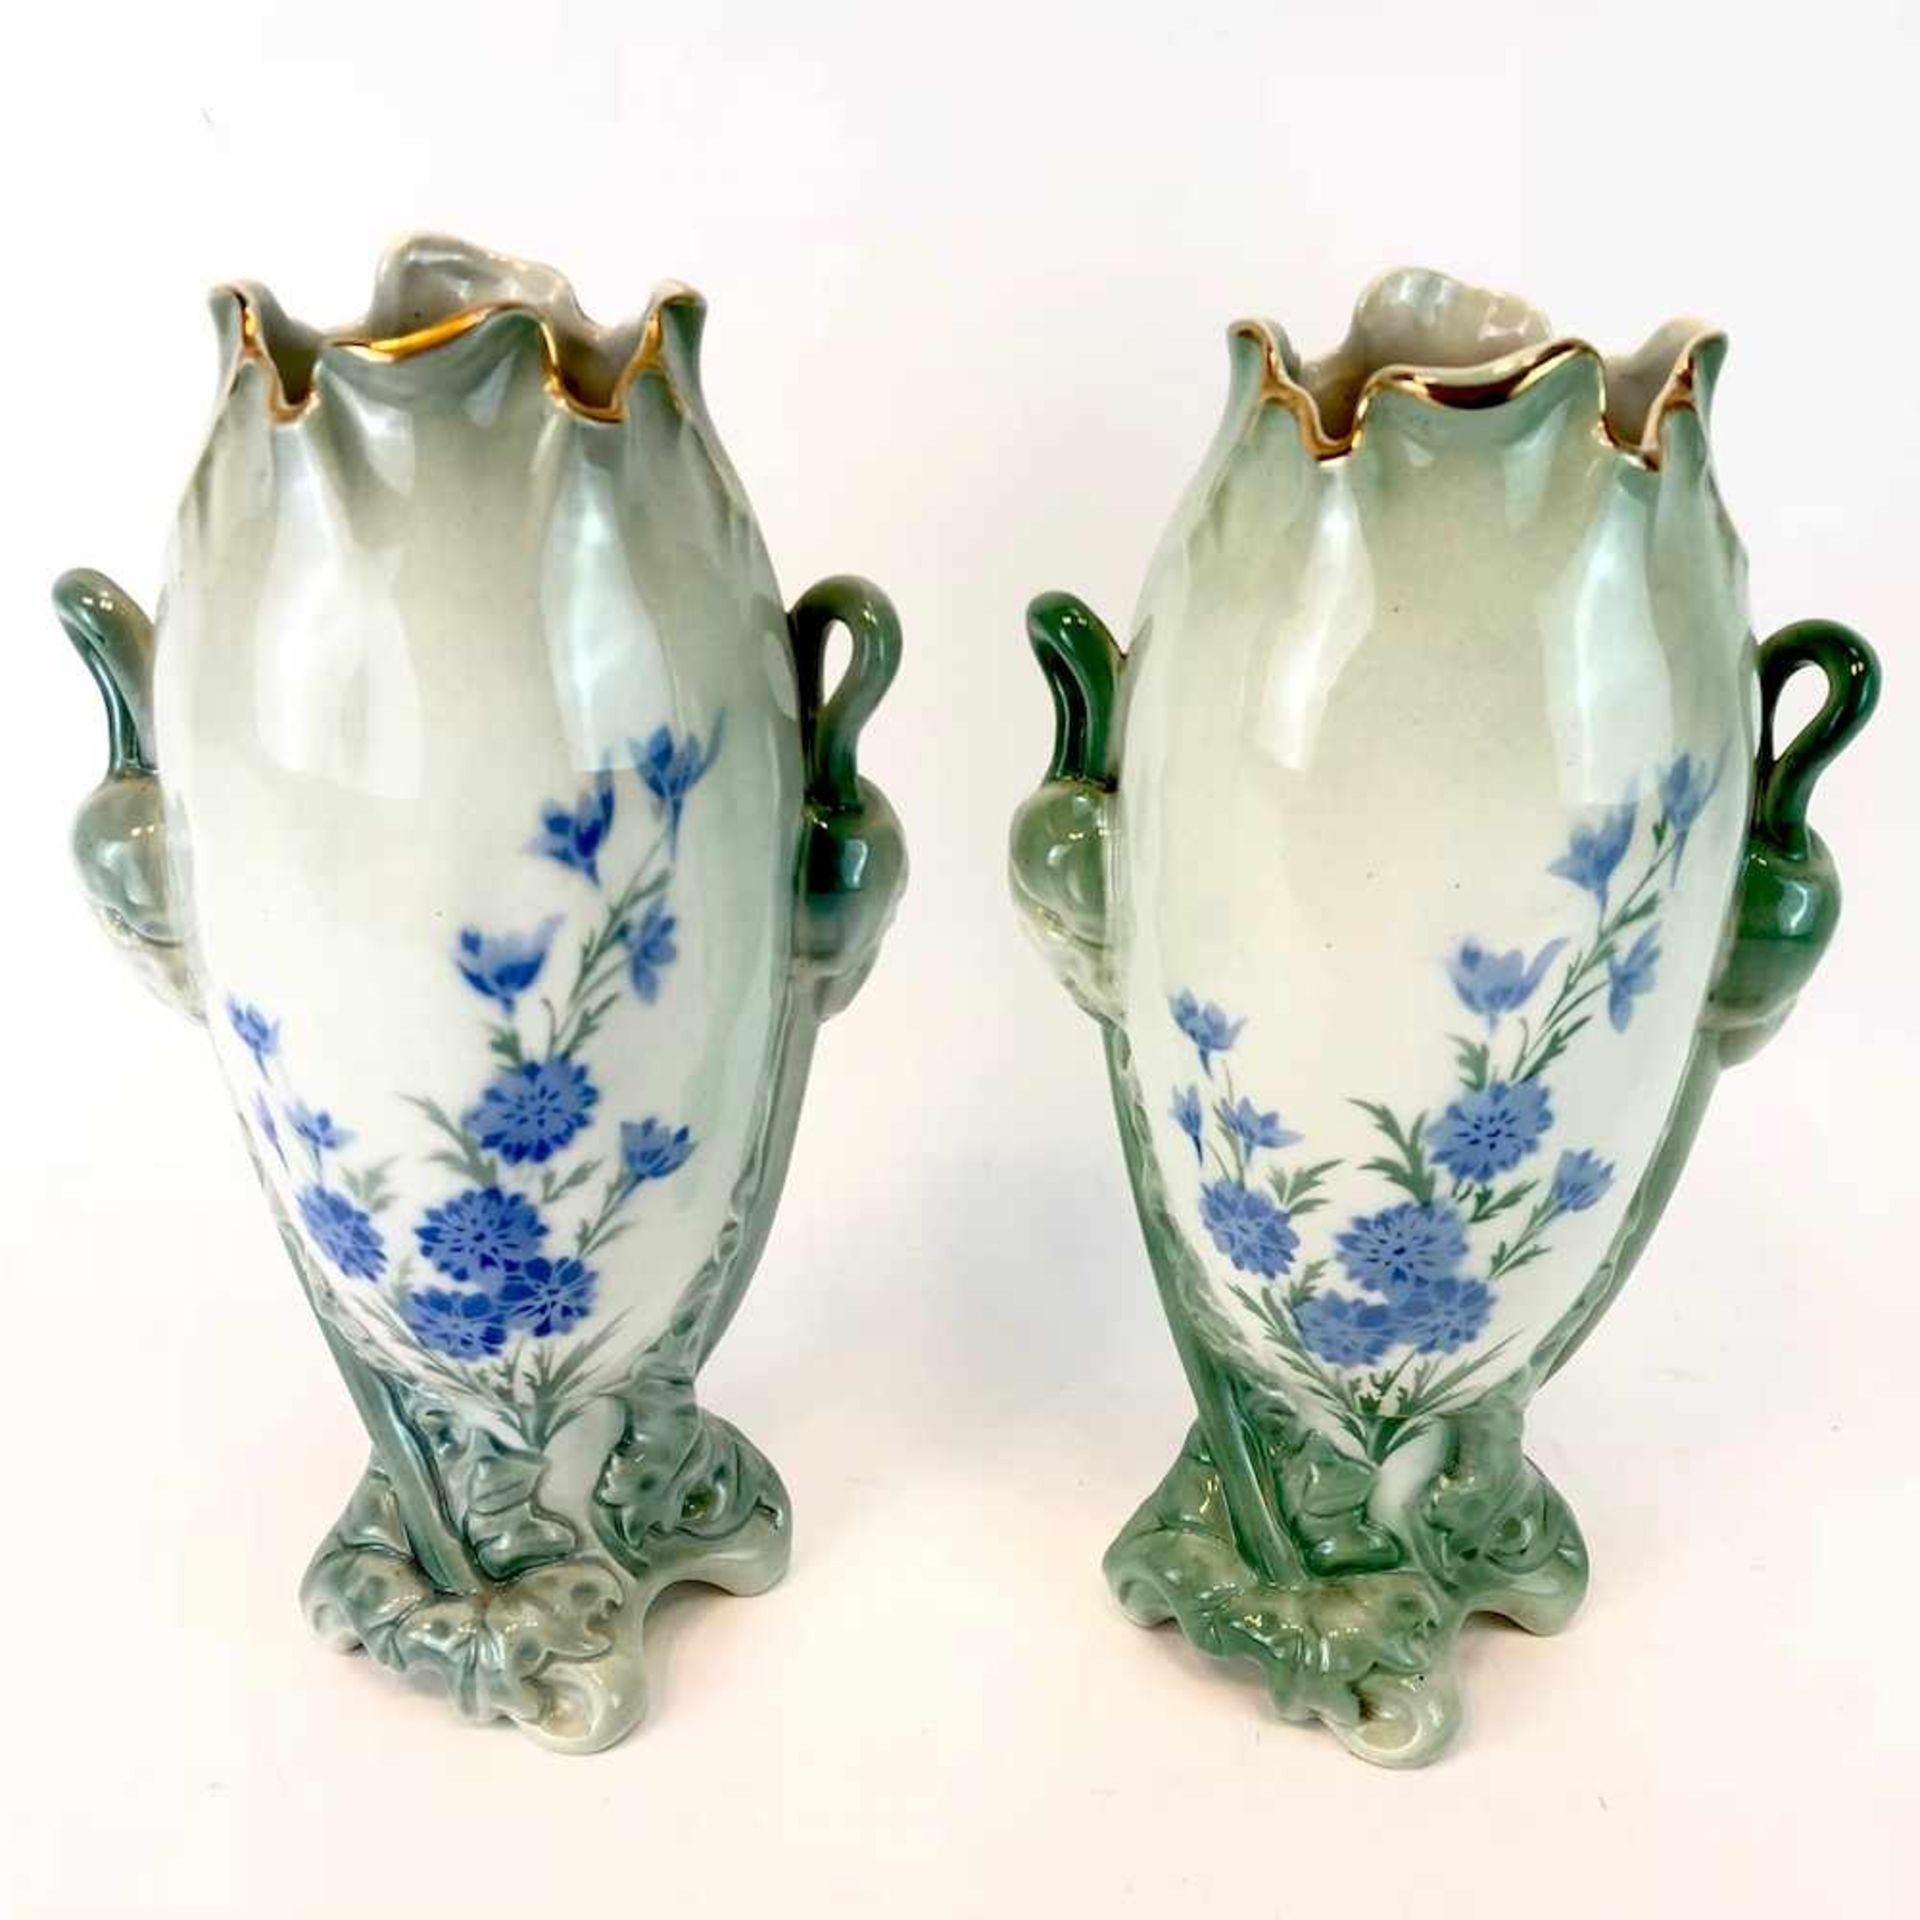 Paar Jugendtsil Vasen: Dekor Mohnblumen und Rittersporn. Luneville Faience / Fayence. Um 1900. - Bild 3 aus 5